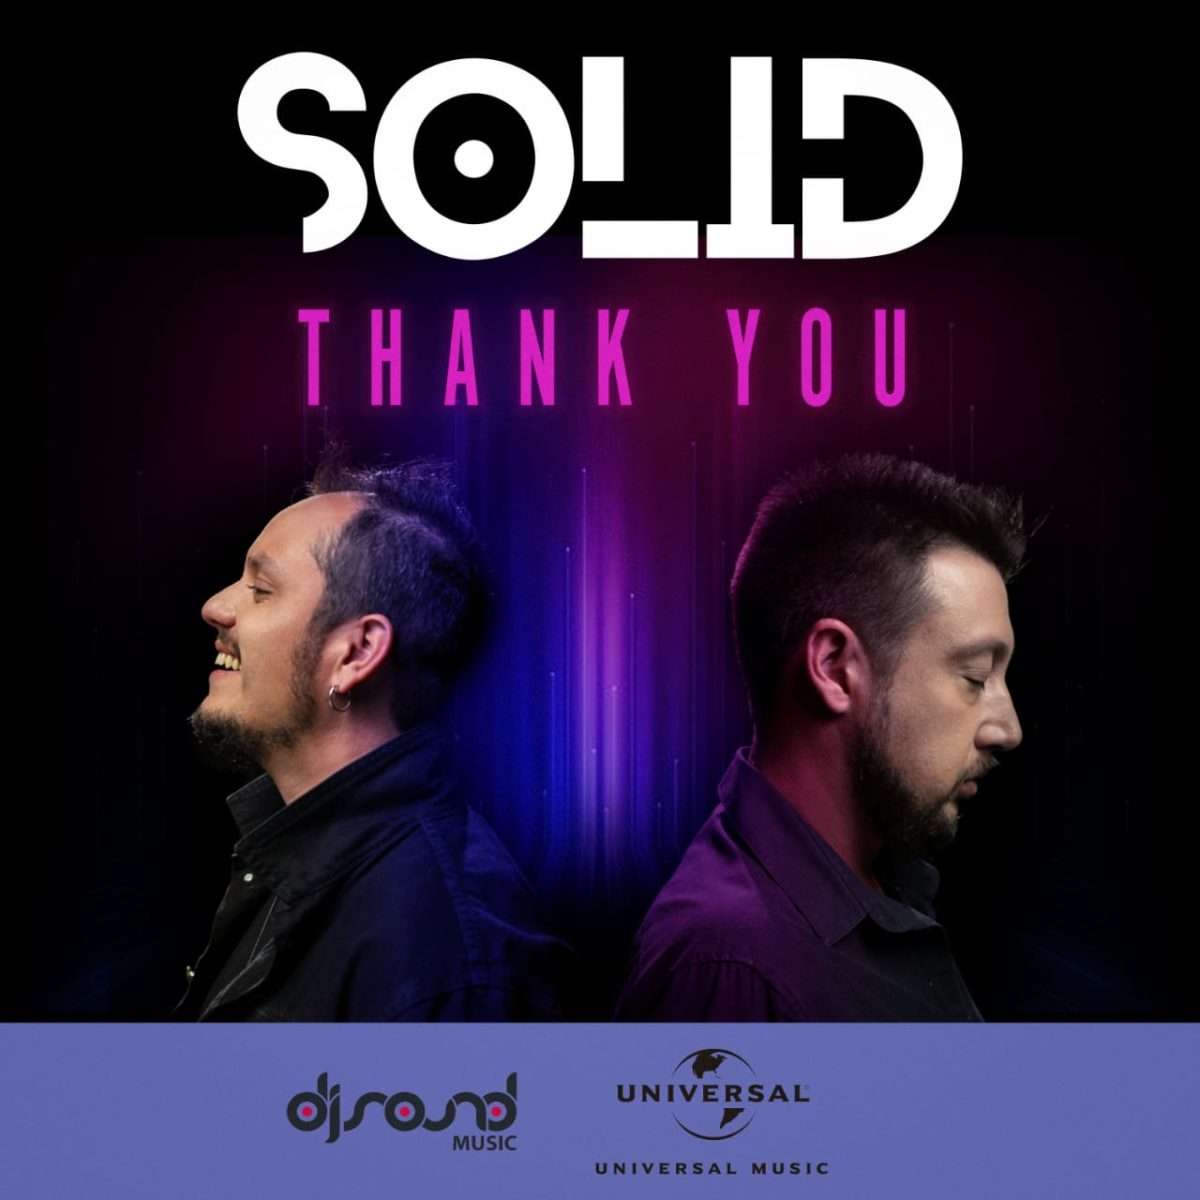 Novo hit da dupla Solid – “Thank You” já está disponível